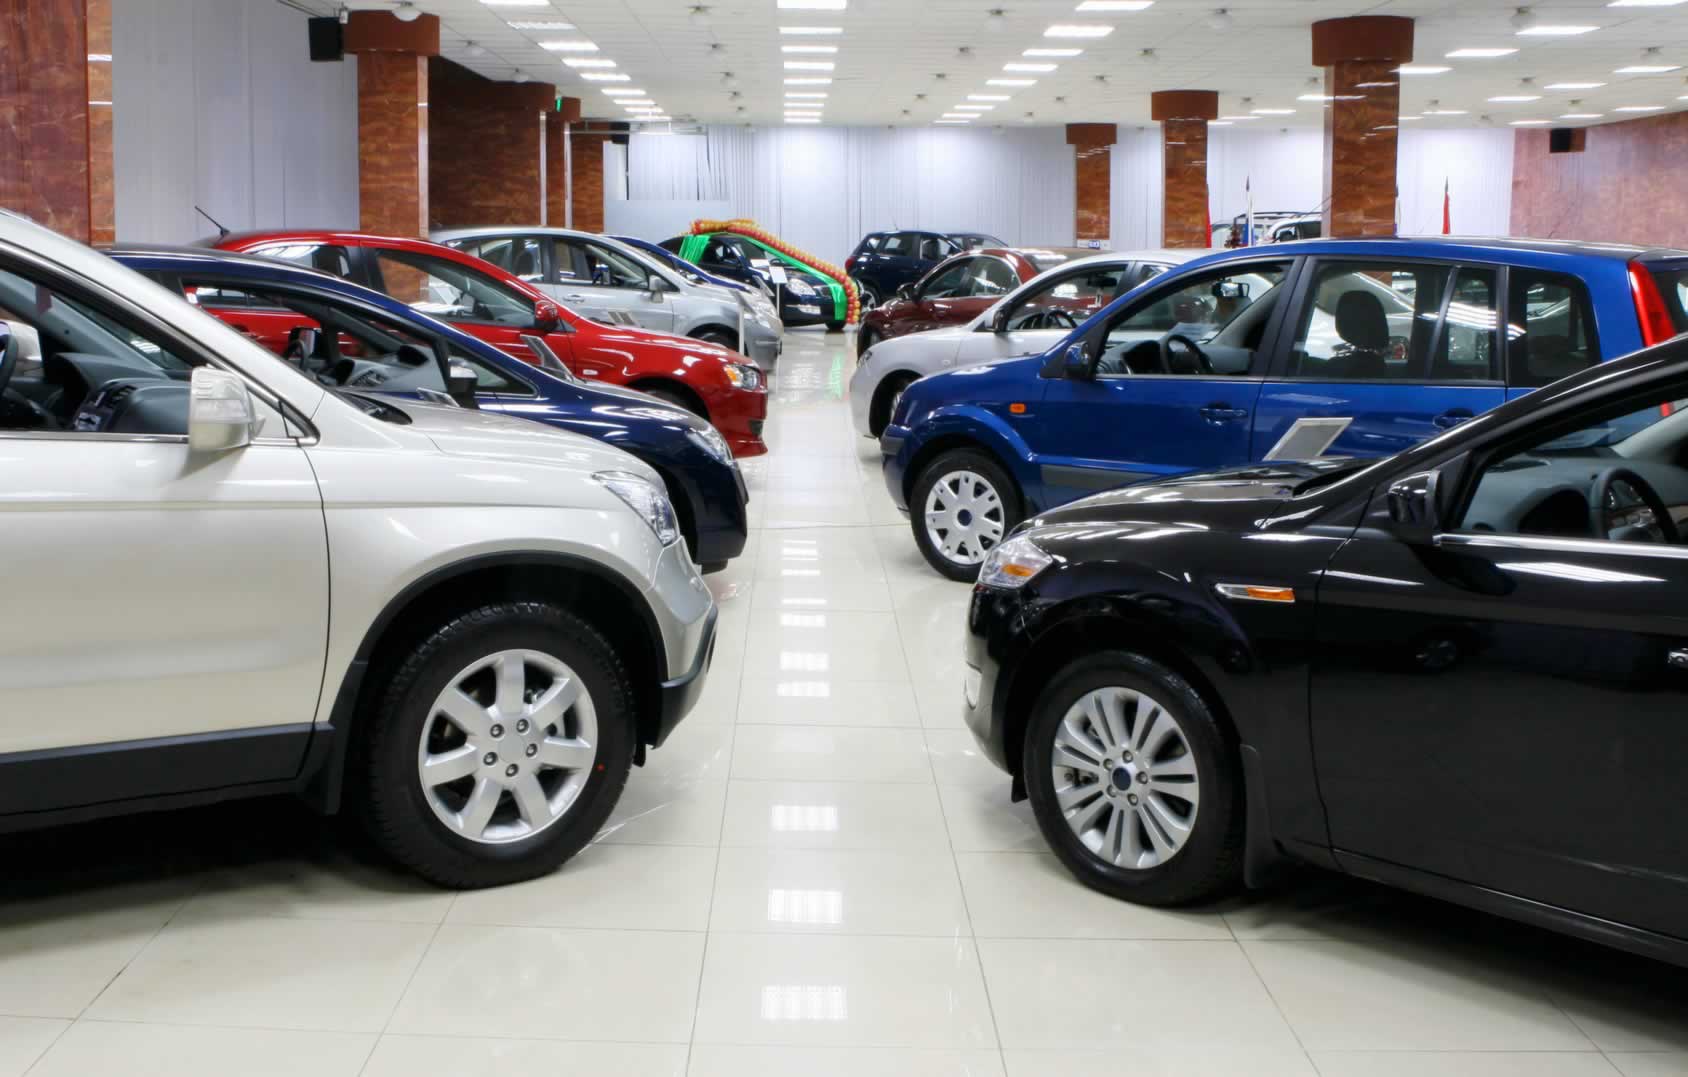 Doanh số ô tô tại thị trường Việt Nam cán mốc 200.000 xe trong năm 2015